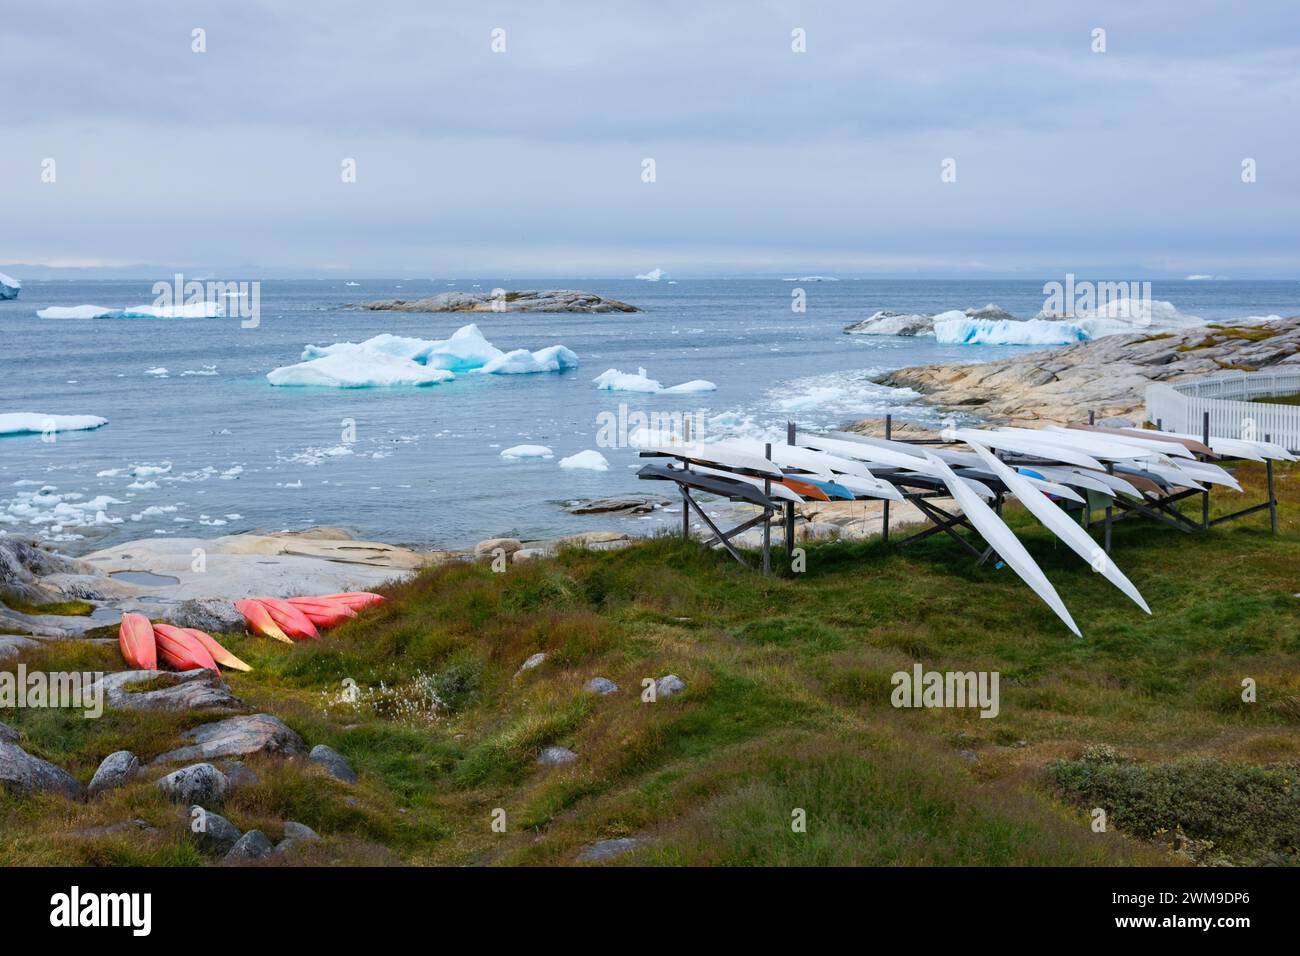 Neben einem Meer mit Eisbergen und Bergkugeln gibt es viele Kajaks. Einige sind im traditionellen Inuit-Stil - lang und schmal. Illulisat, Grönland. Stockfoto